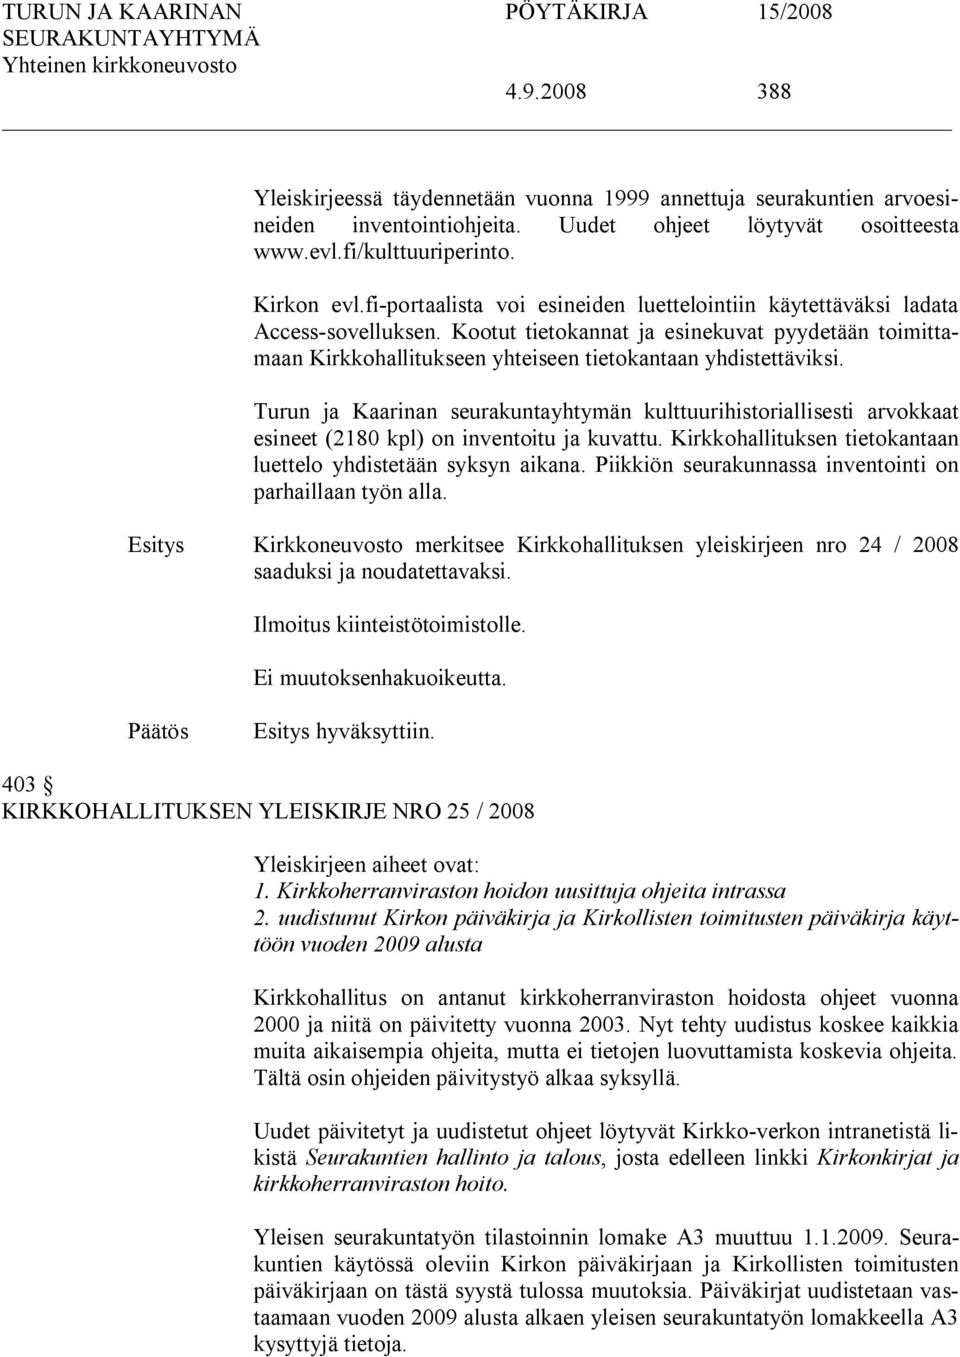 Turun ja Kaarinan seurakuntayhtymän kulttuurihistoriallisesti arvokkaat esineet (2180 kpl) on inventoitu ja kuvattu. Kirkkohallituksen tietokantaan luettelo yhdistetään syksyn aikana.